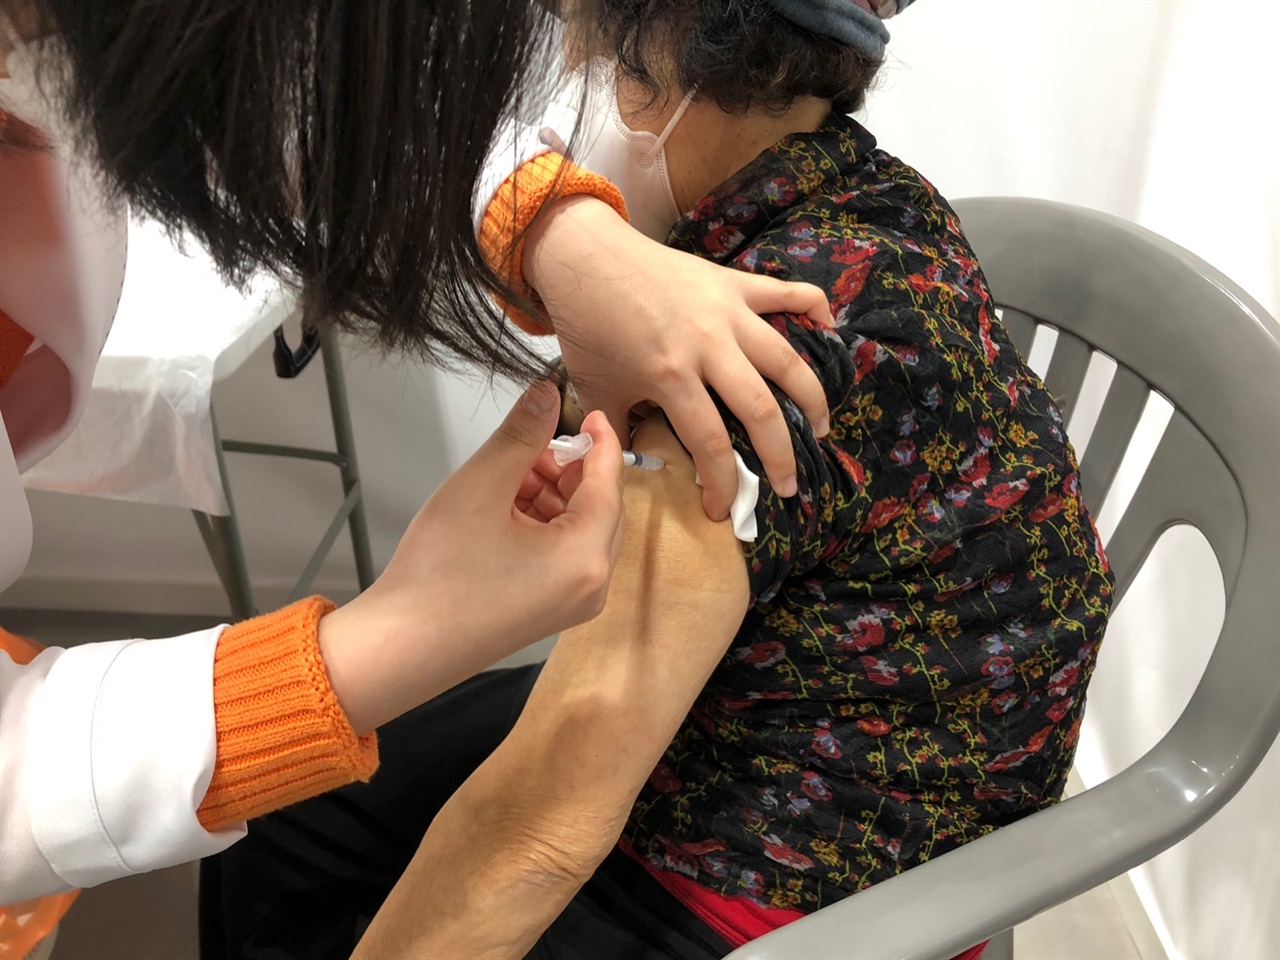 삼척시는 1일부터 3일까지 진행된 코로나19 백신접종 결과 889명이 1차 접종을 마쳤다고 밝혔다. 